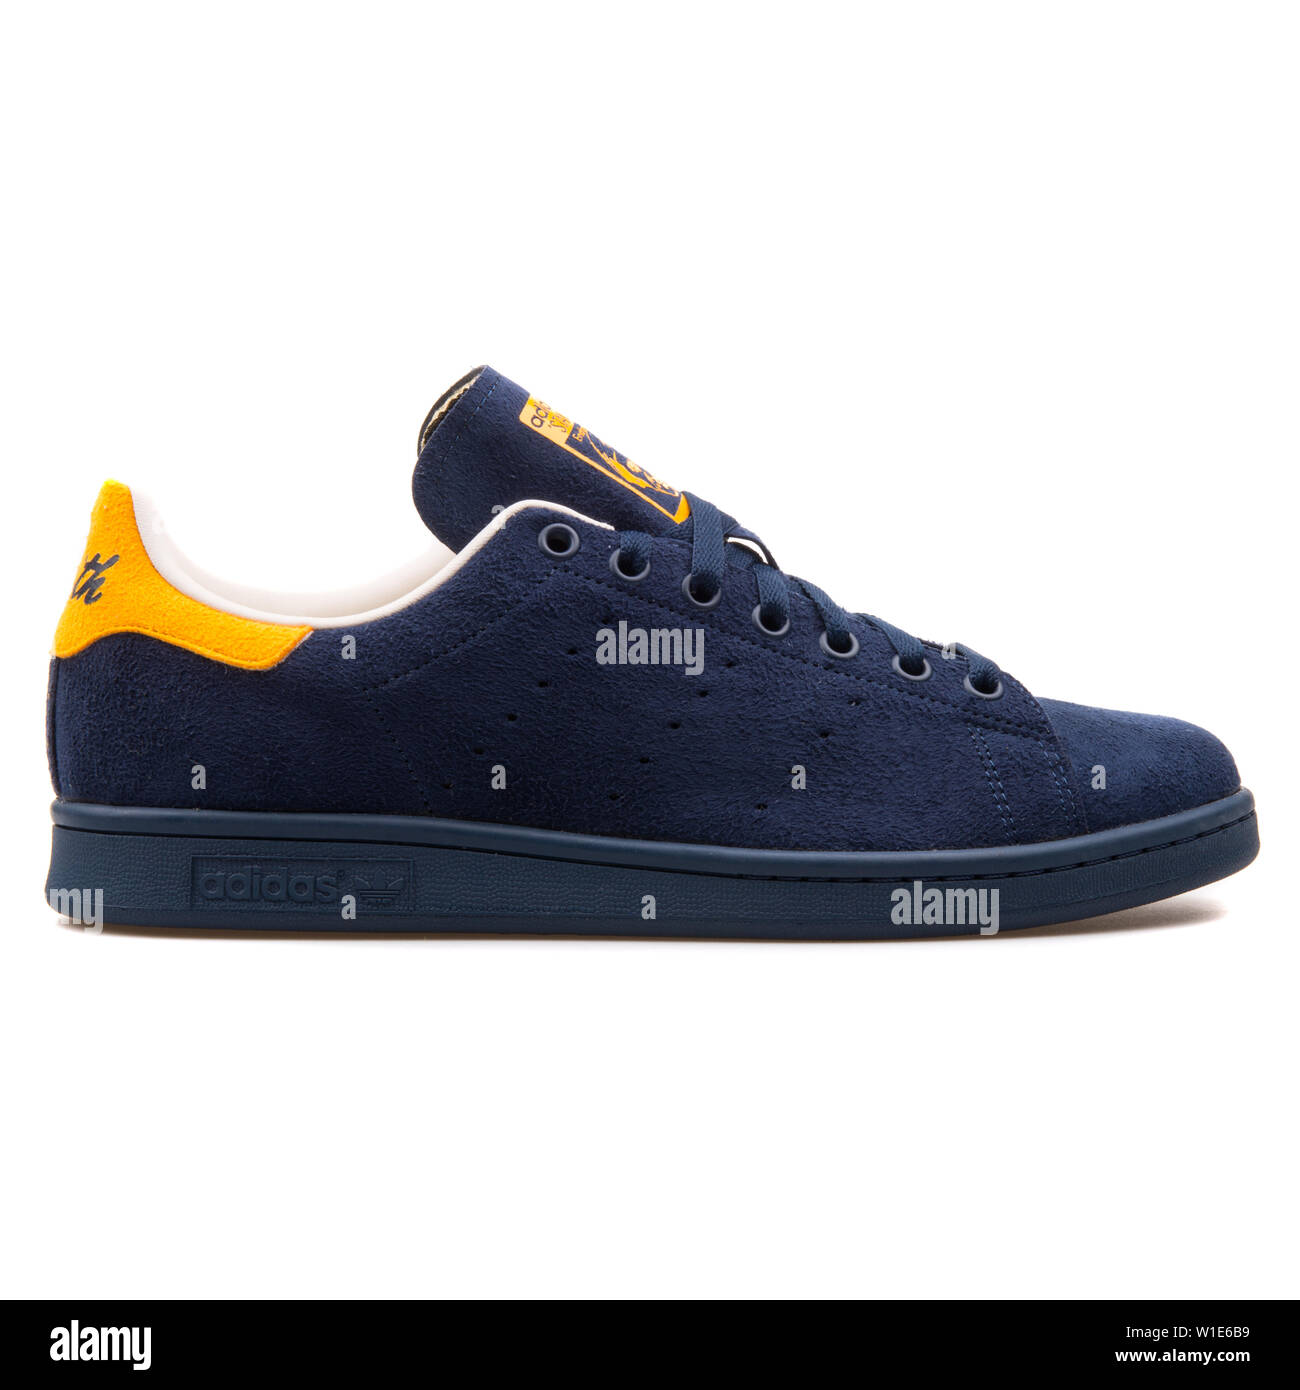 Stan smith sneaker Banque d'images détourées - Alamy